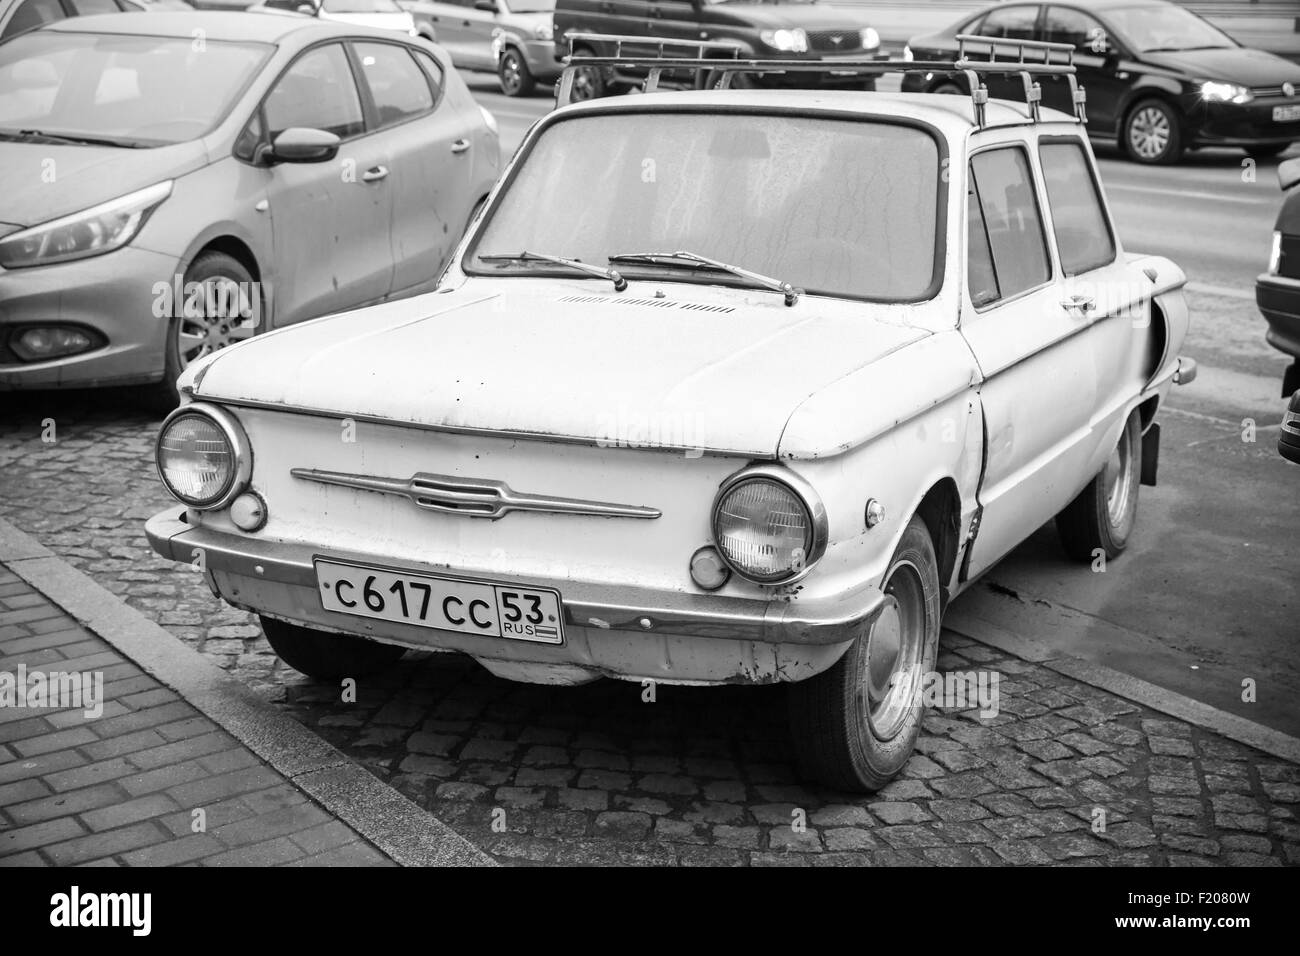 San Pietroburgo, Russia - 15 Novembre 2014: vecchi Zaz sovietica 968 auto è parcheggiata sul ciglio della strada Foto Stock